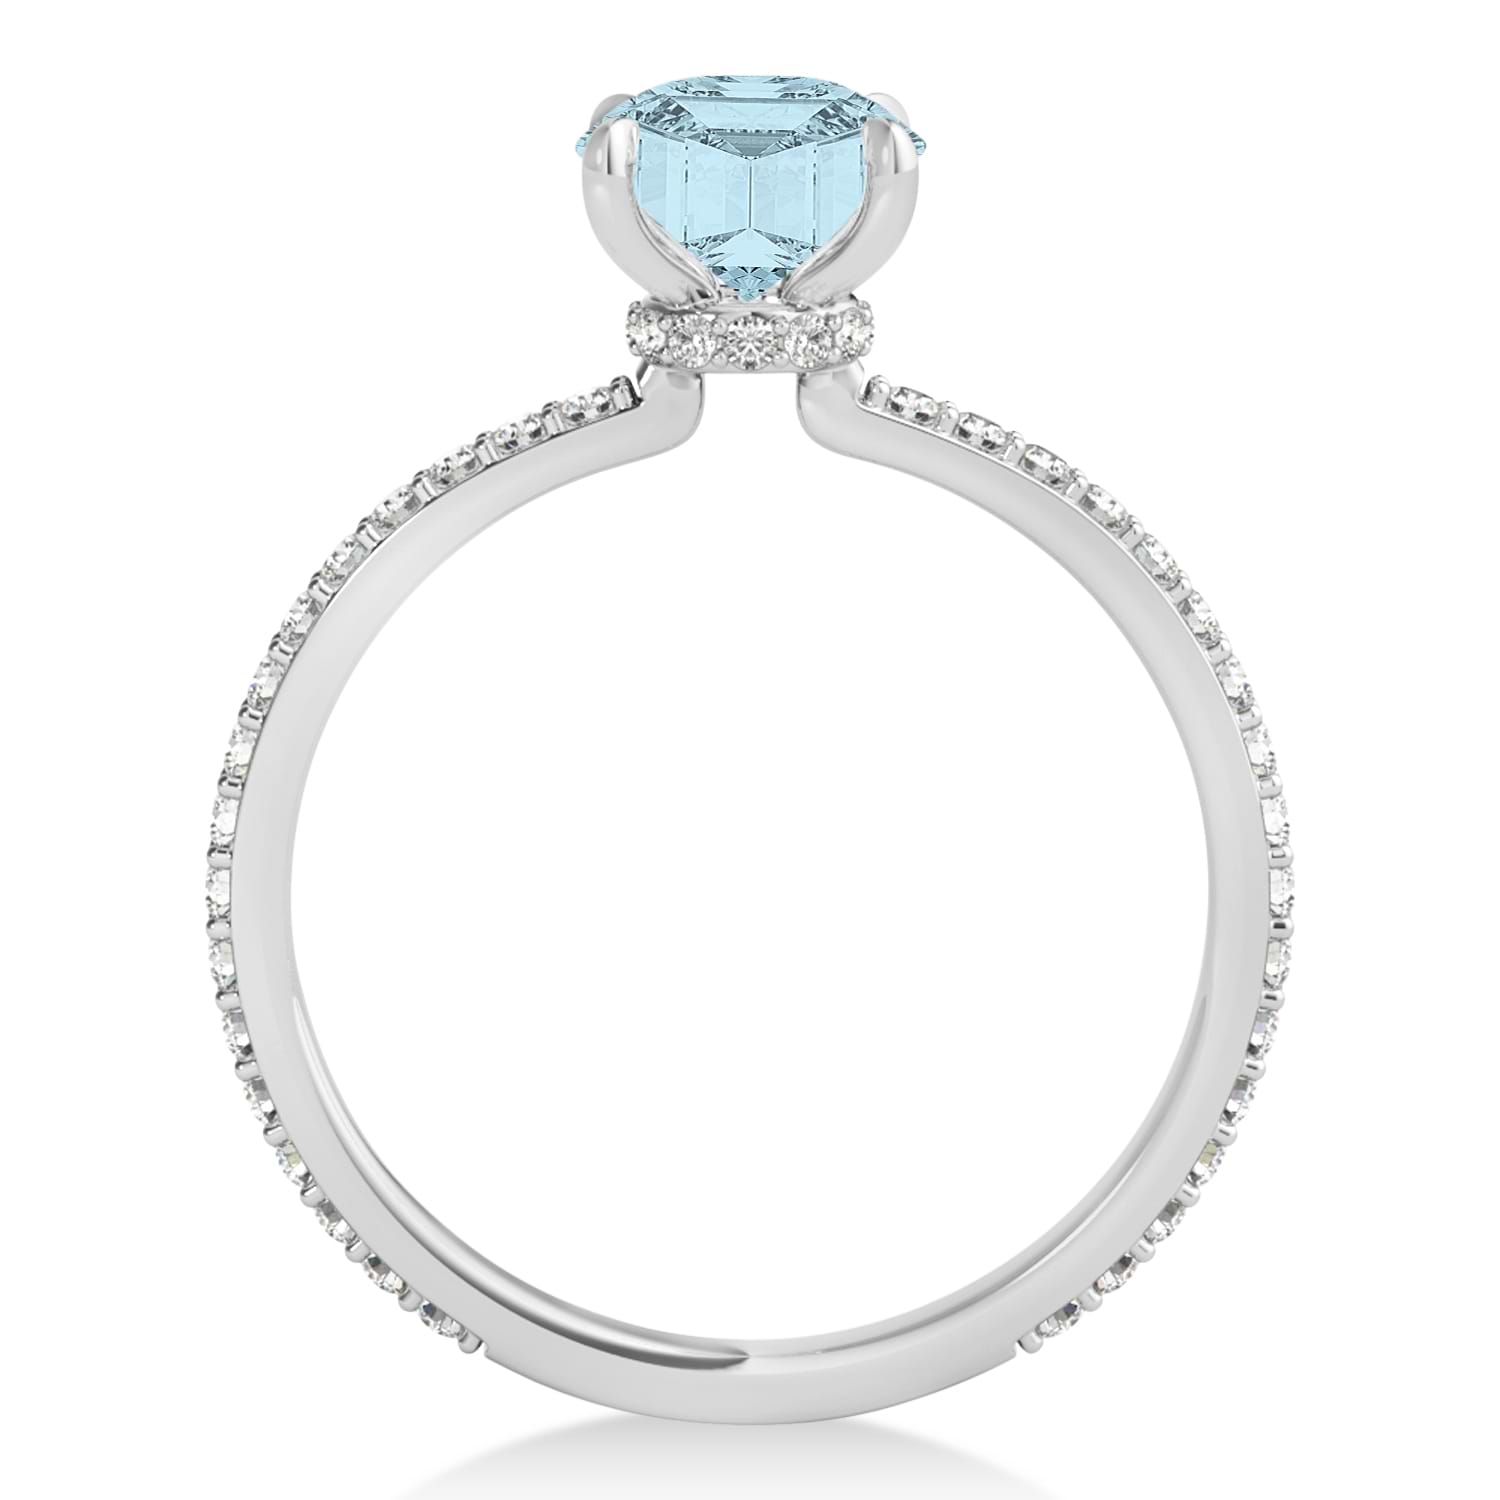 Emerald Aquamarine & Diamond Hidden Halo Engagement Ring Platinum (2.93ct)